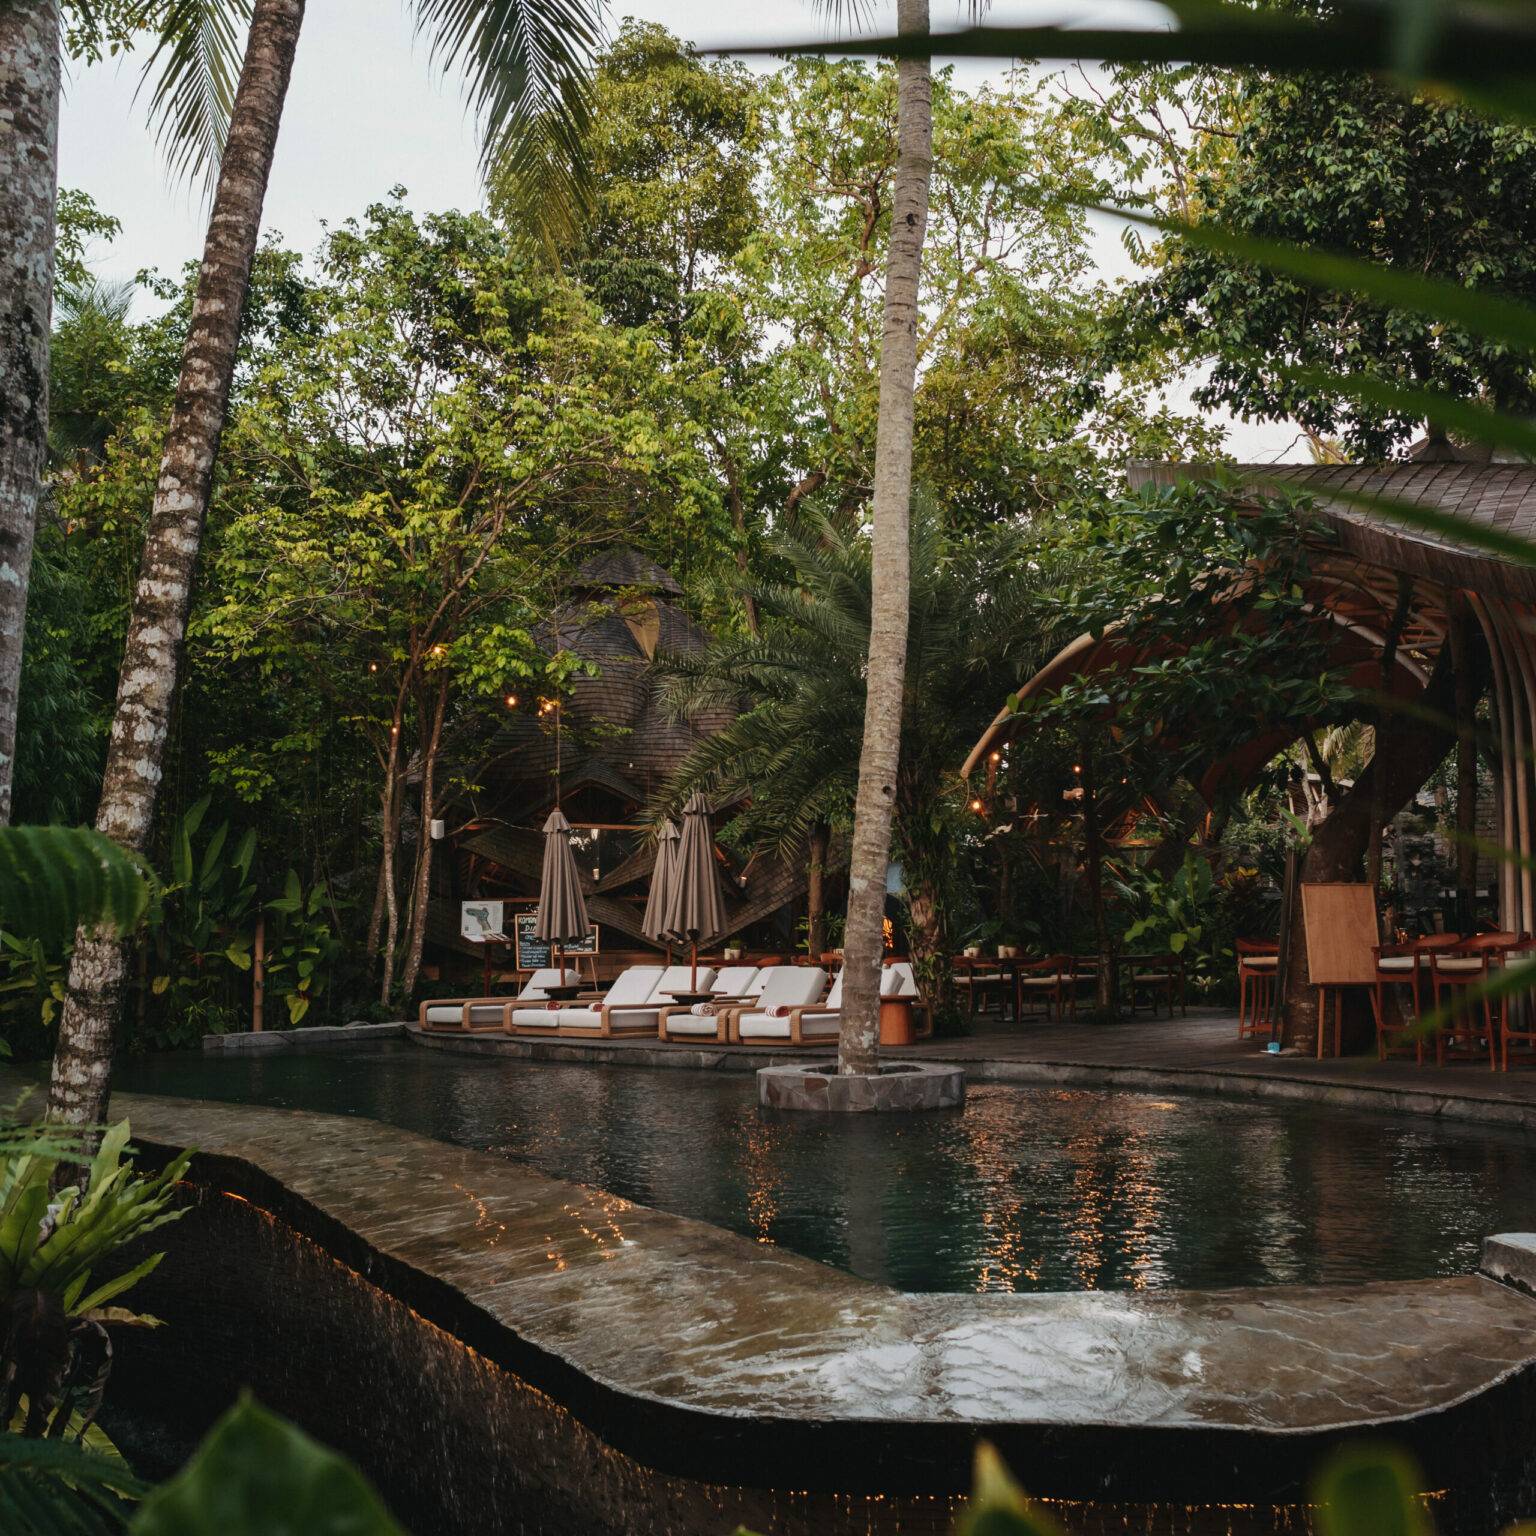 Liegeflächen im Ulaman Bali laden am Pool umgeben von Grün zum Entspannen ein.